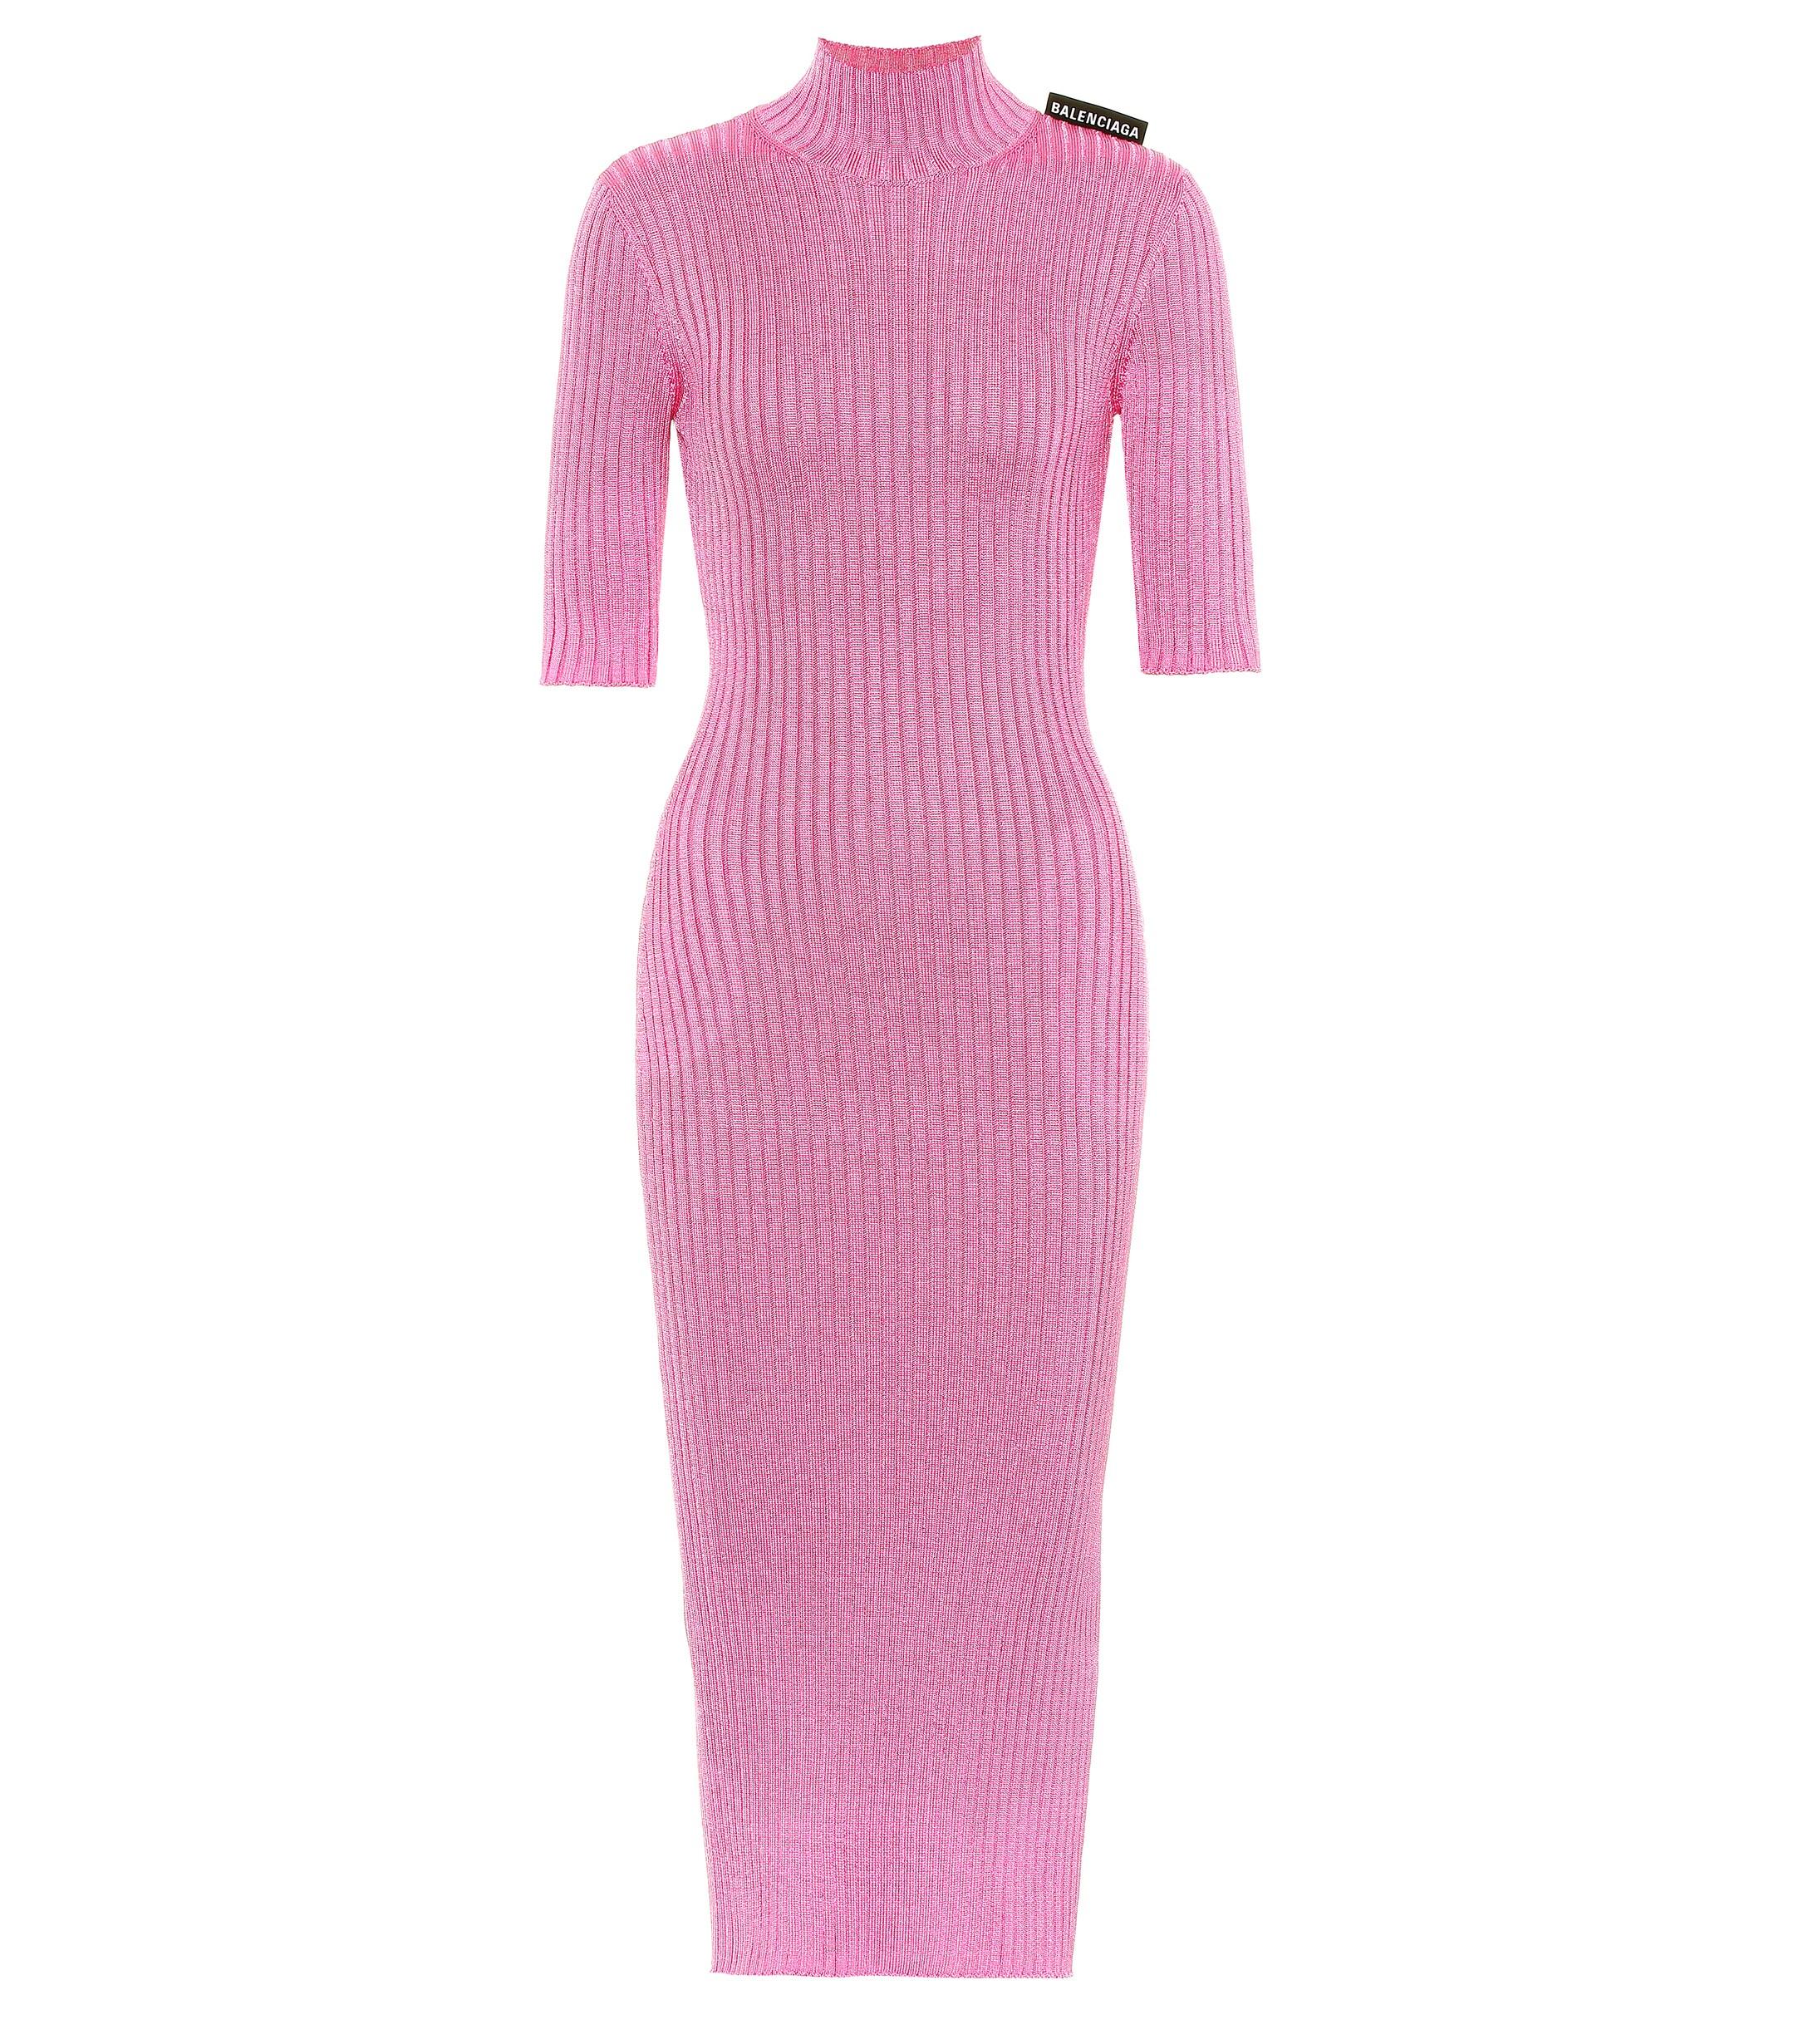 Balenciaga Ribbed-knit Midi Dress in Bubblegum (Pink) - Lyst